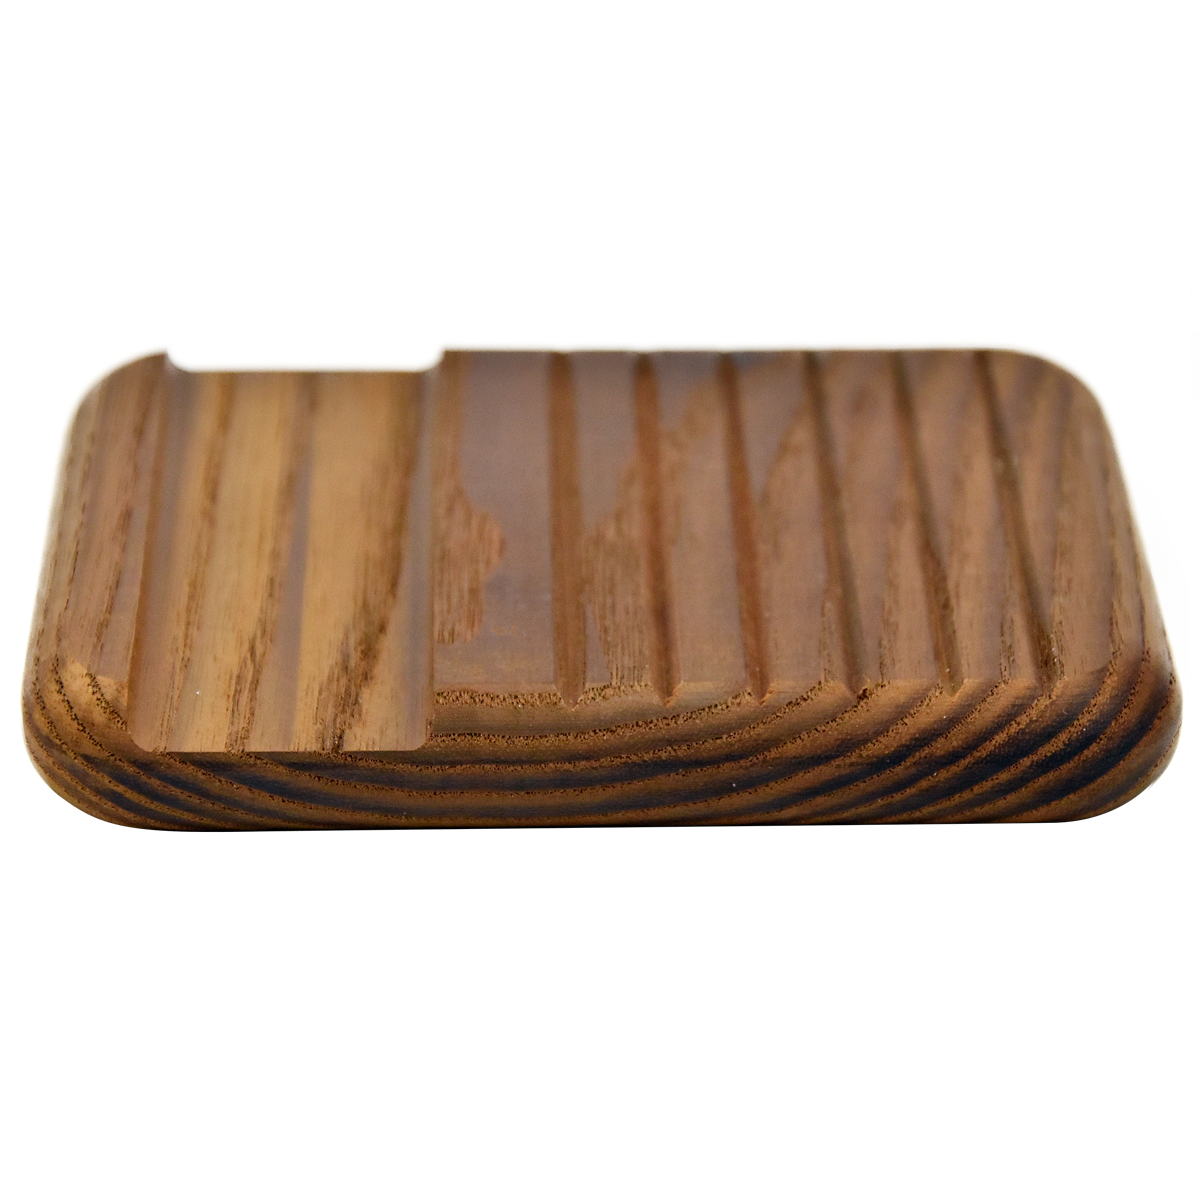 Heritage Soap Holder- Ash Wood